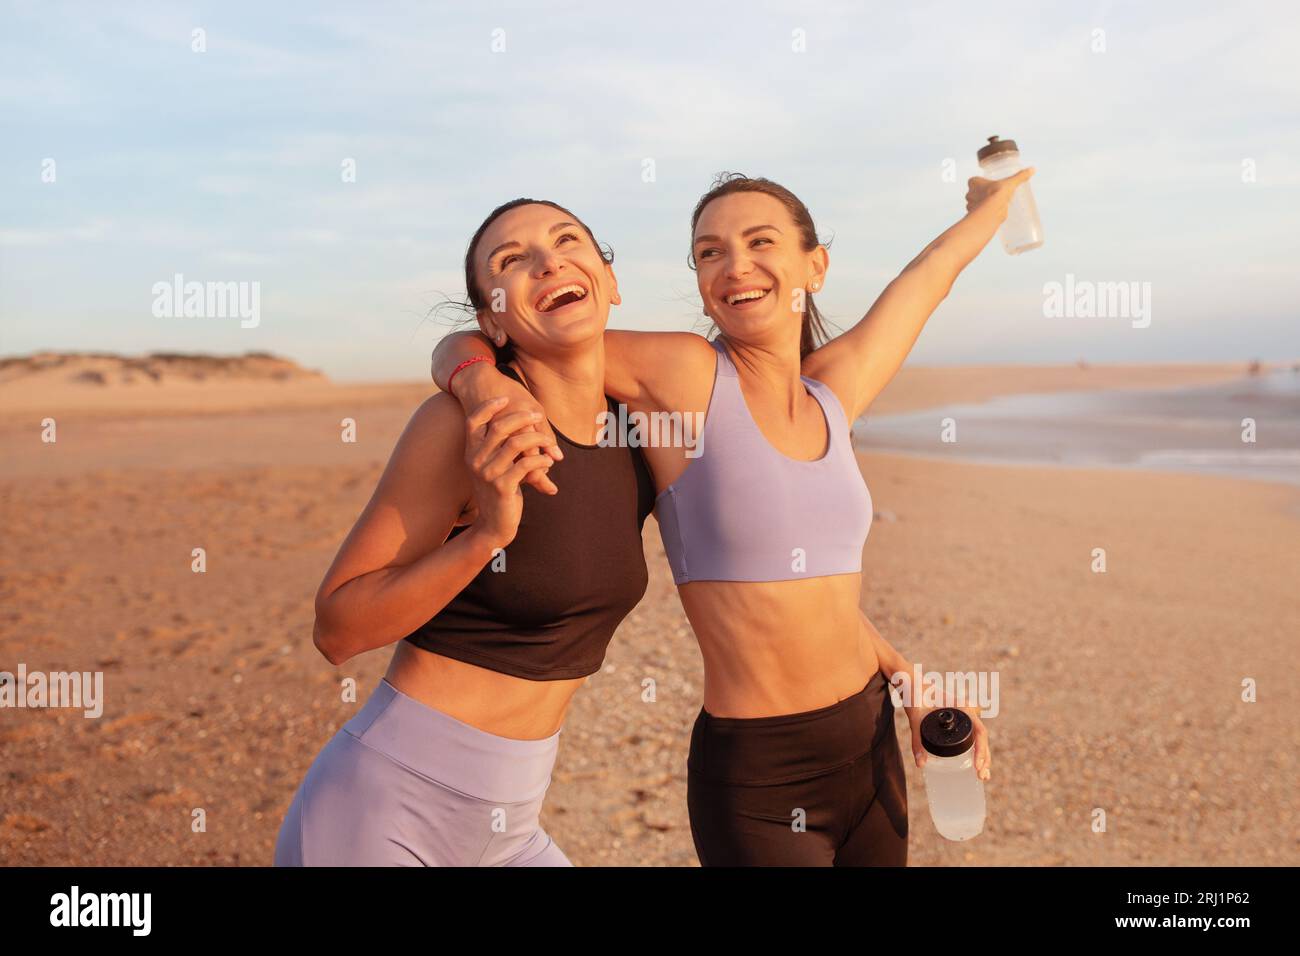 Zufriedene, fröhliche junge kaukasische Frauen umarmen sich, genießen morgens Workout, haben Spaß mit Wasserflaschen Stockfoto